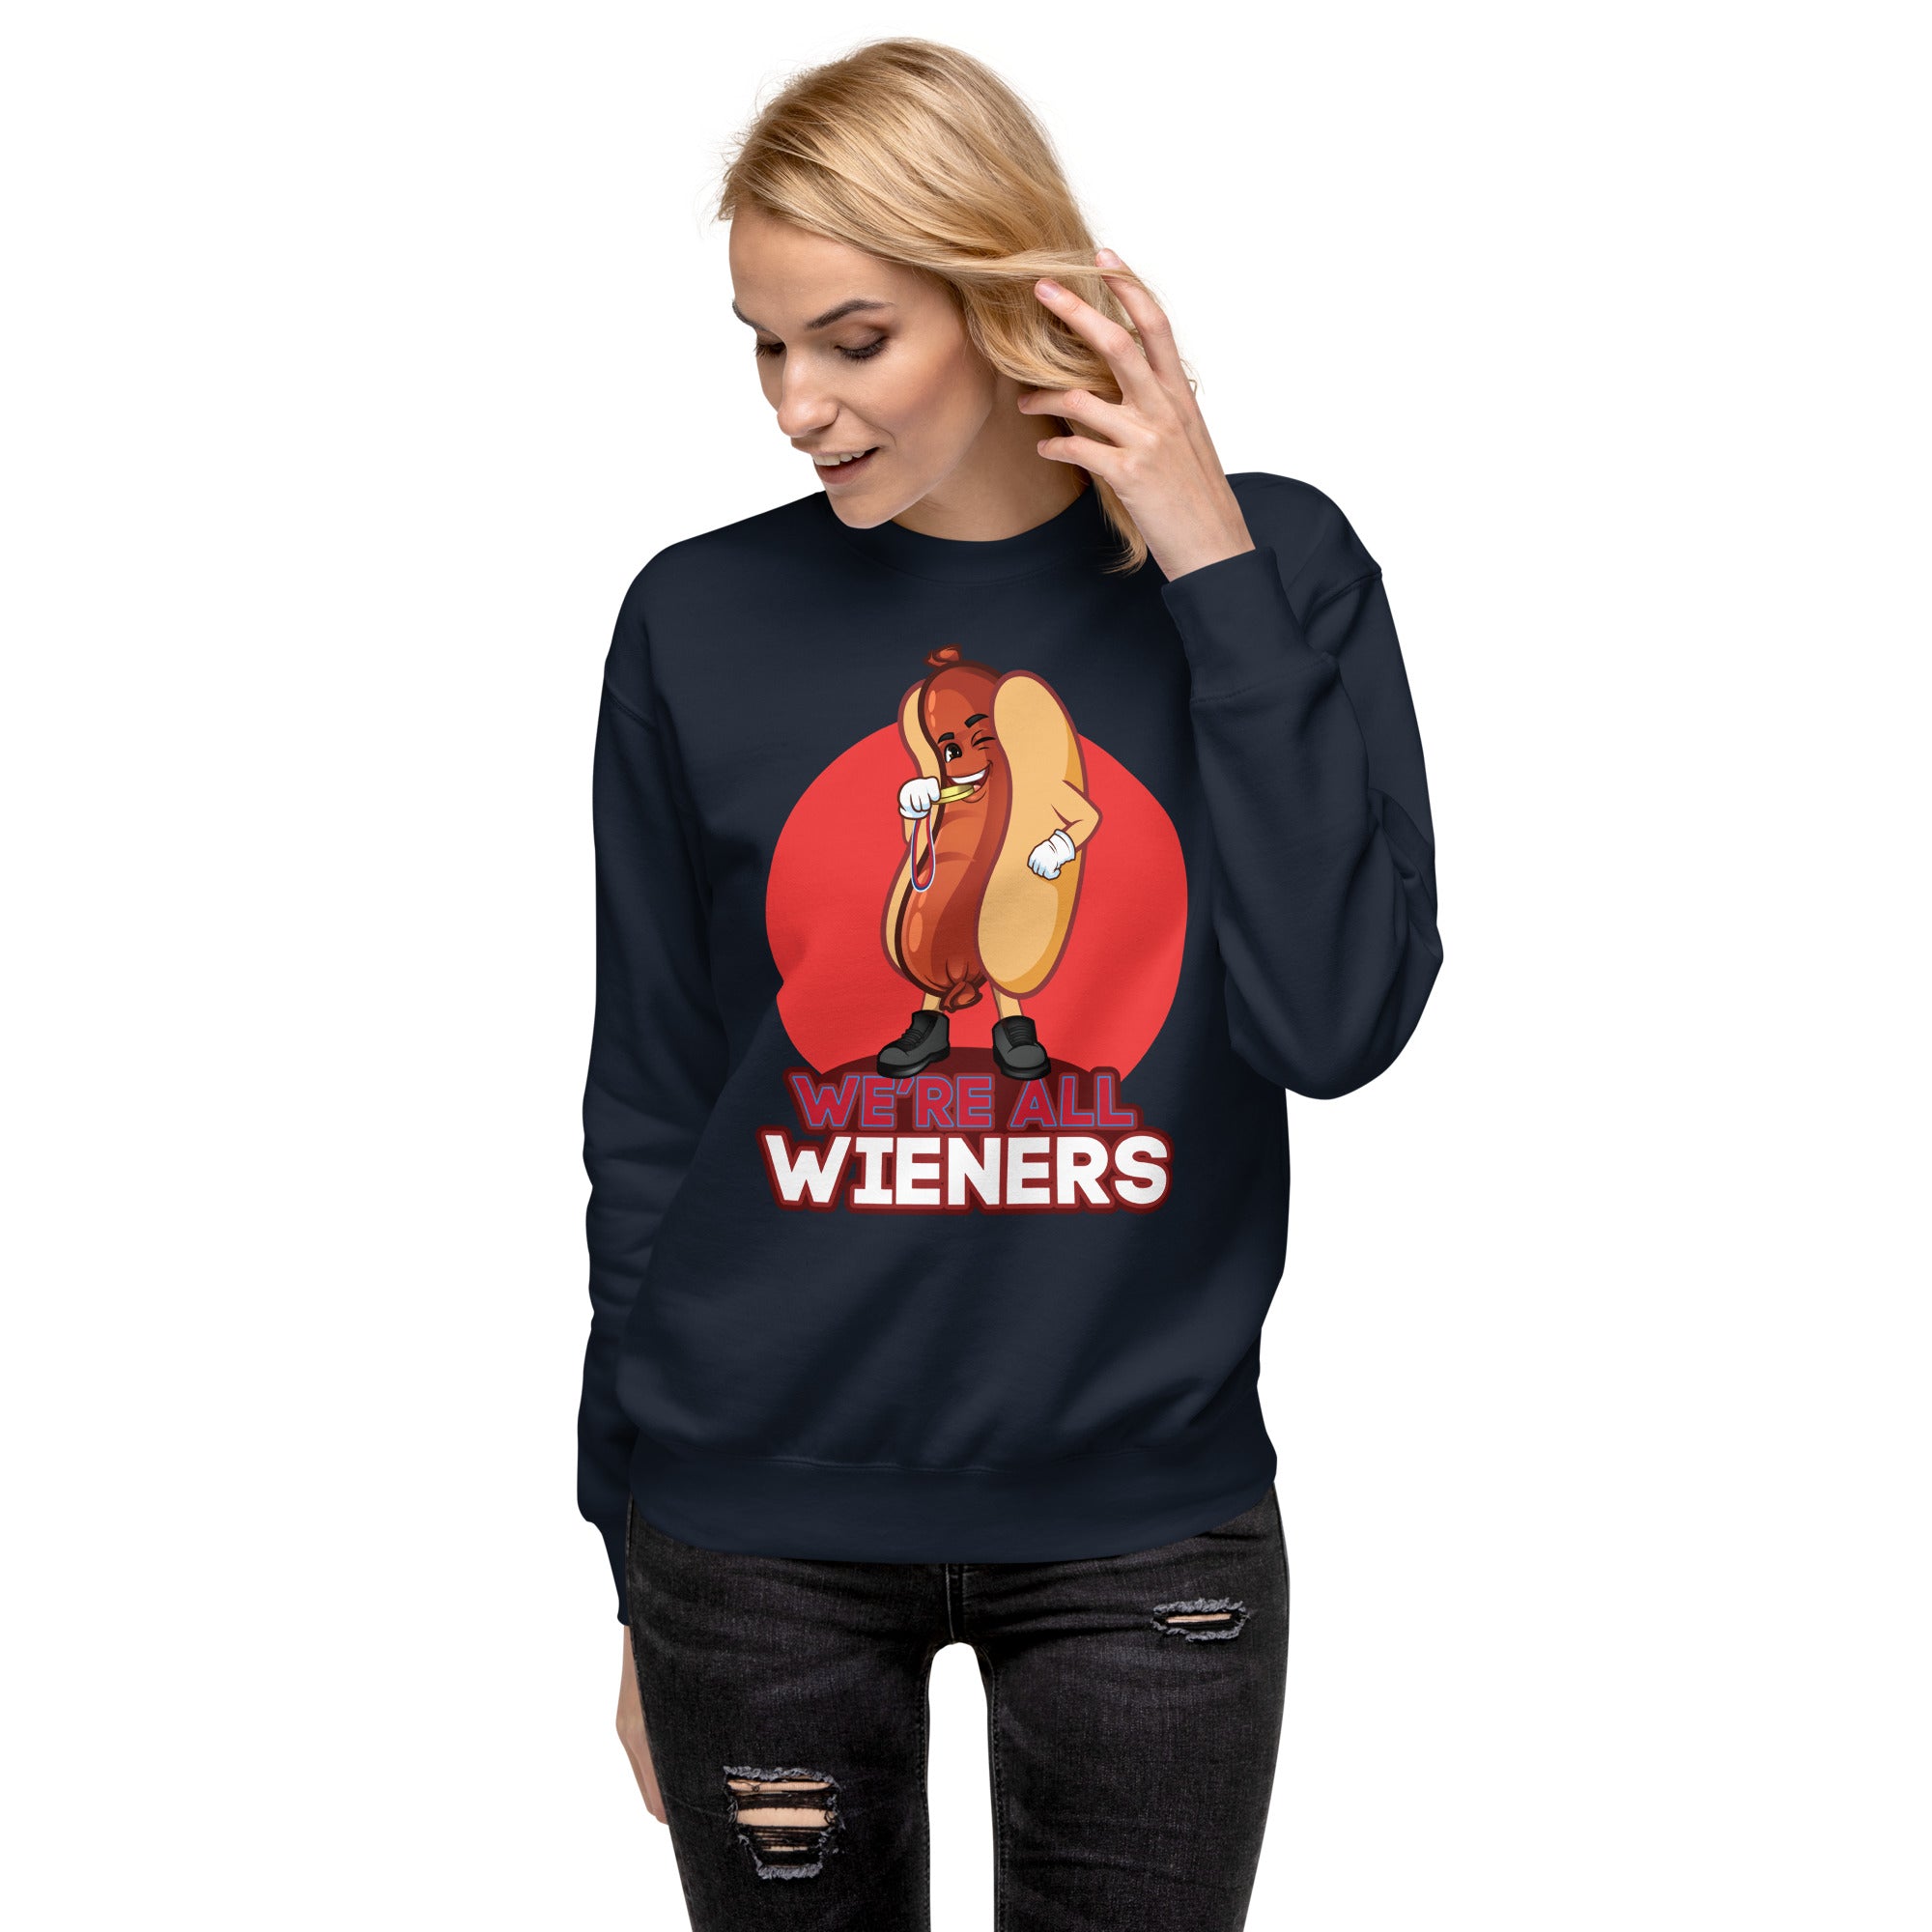 We're All Wieners Women's Heavy Crew Sweatshirt - Red